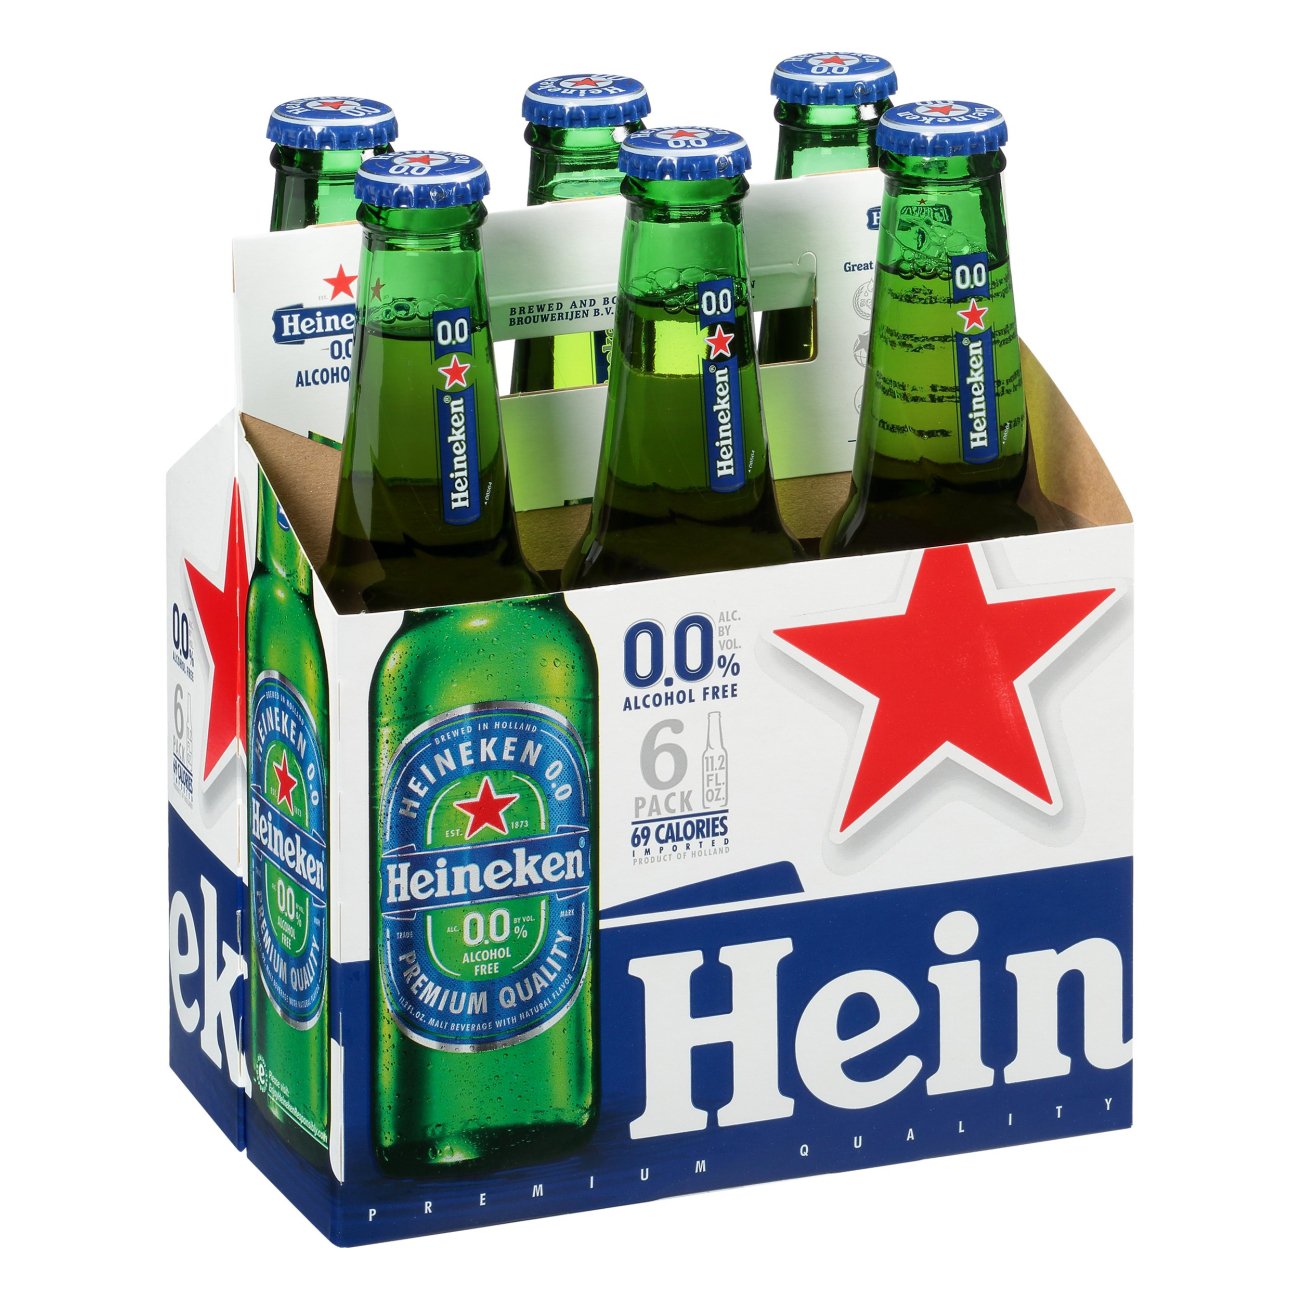 Heineken 00 Alcohol Free Beer 112 Oz Bottles Shop Beer At H E B